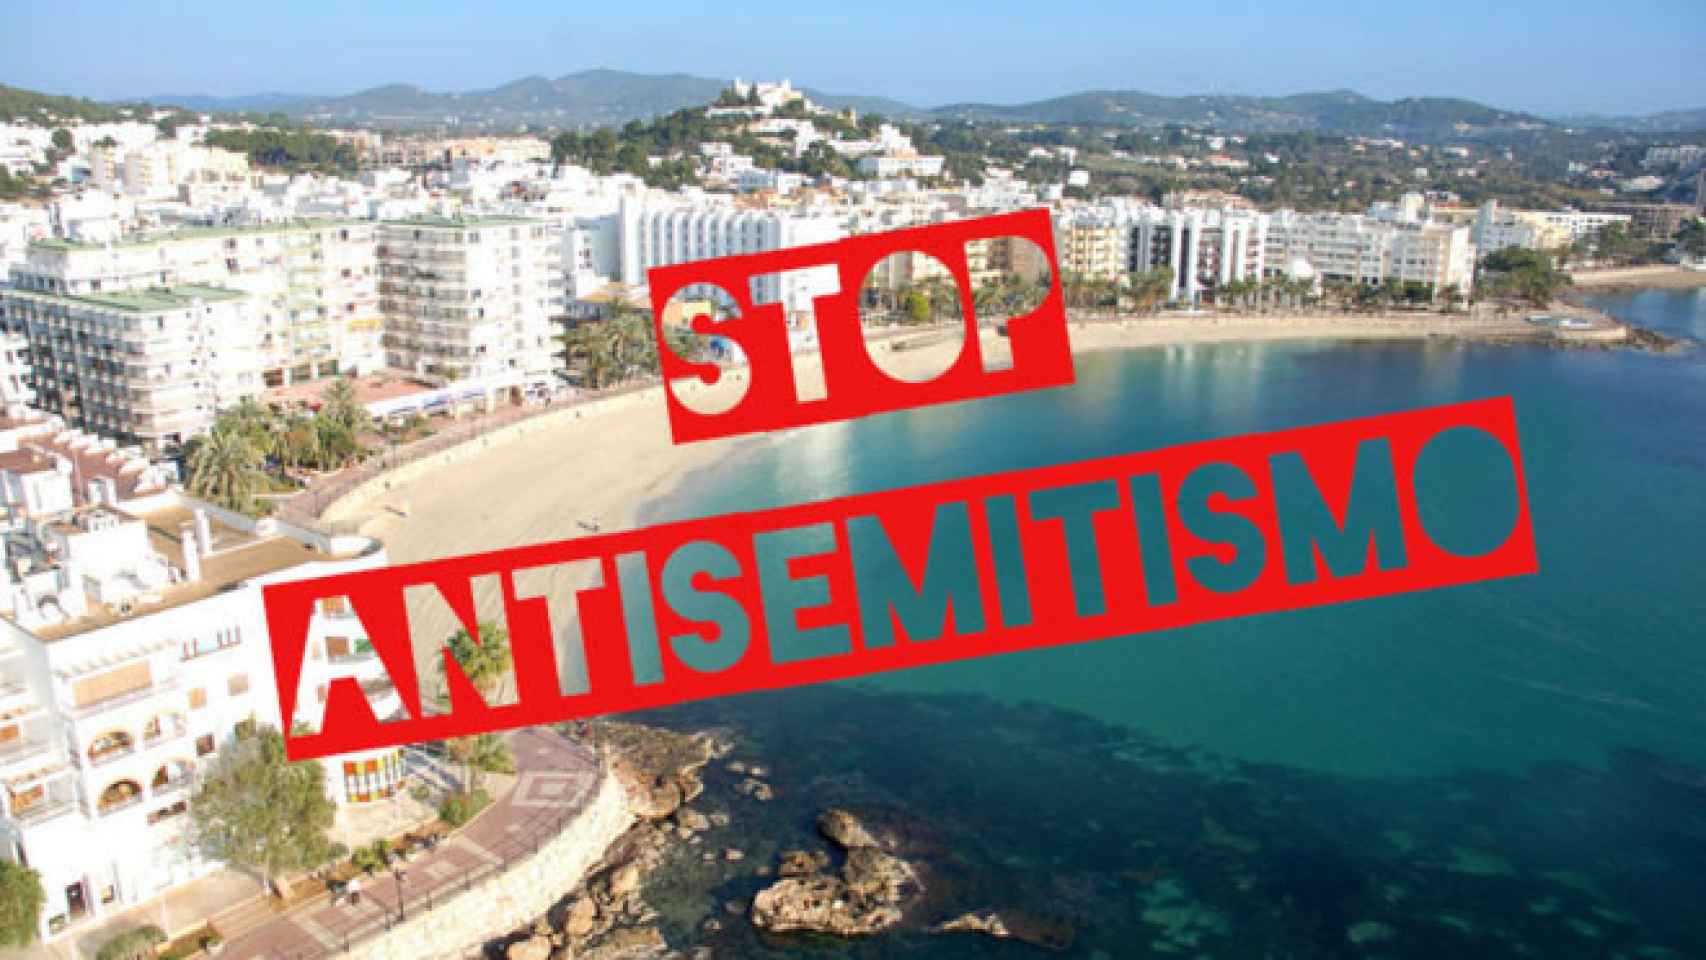 Imagen de Ibiza que usa el 'lobby' ACOM para frenar el boicot de la localidad ibicenca. / ACOM